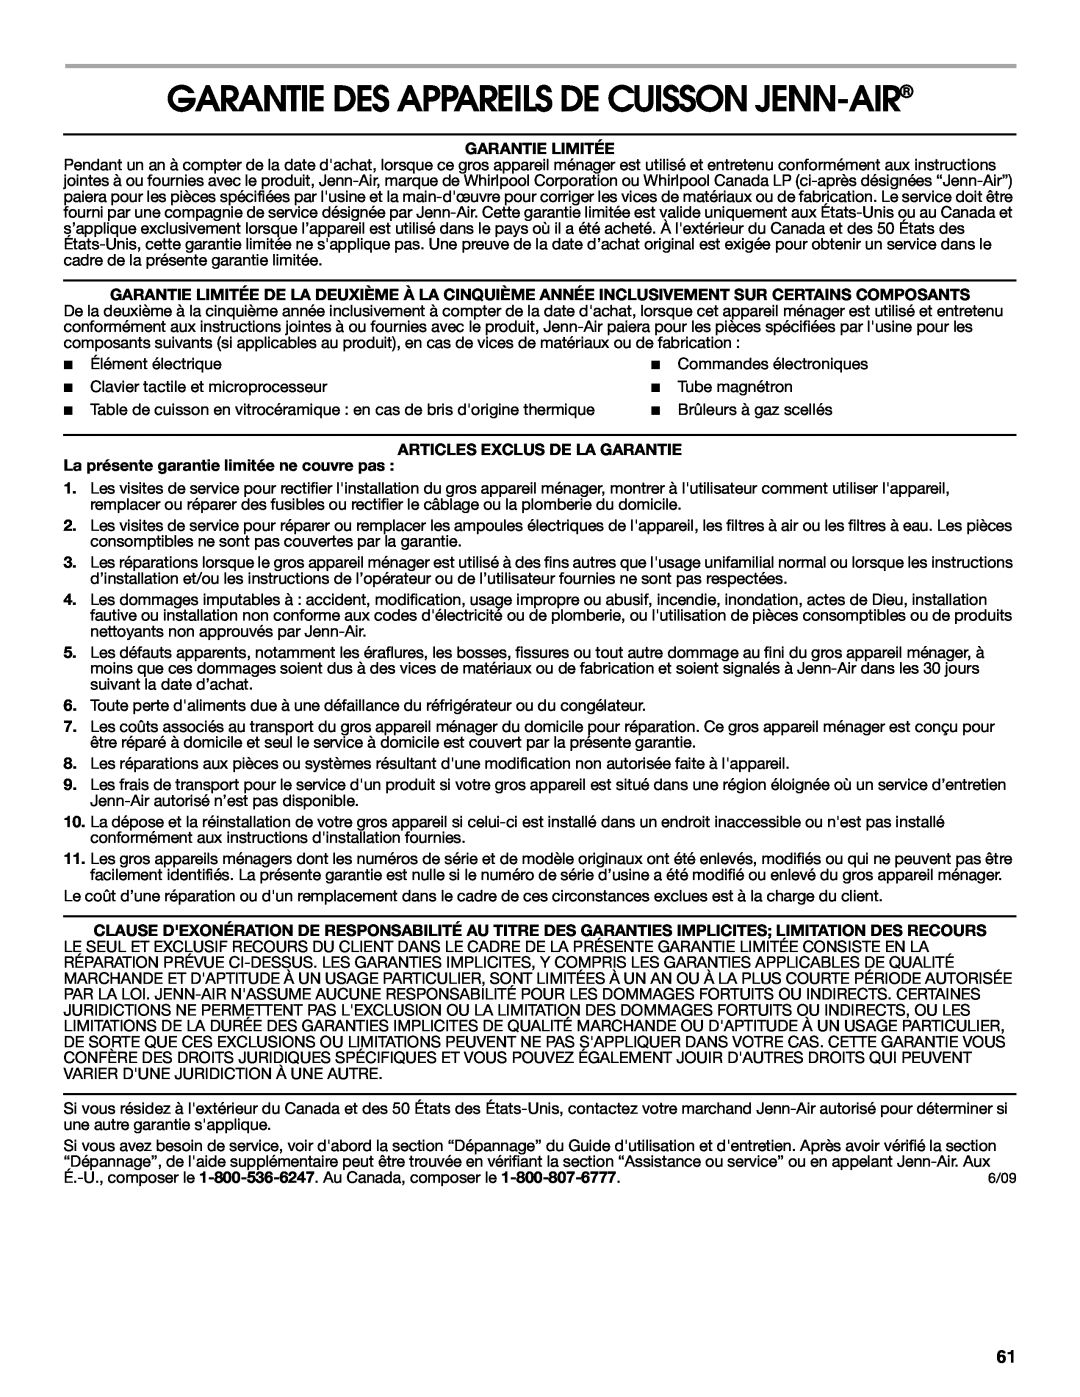 Jenn-Air JMC2127, JMW2327 Garantie Des Appareils De Cuisson Jenn-Air, Garantie Limitée, Articles Exclus De La Garantie 